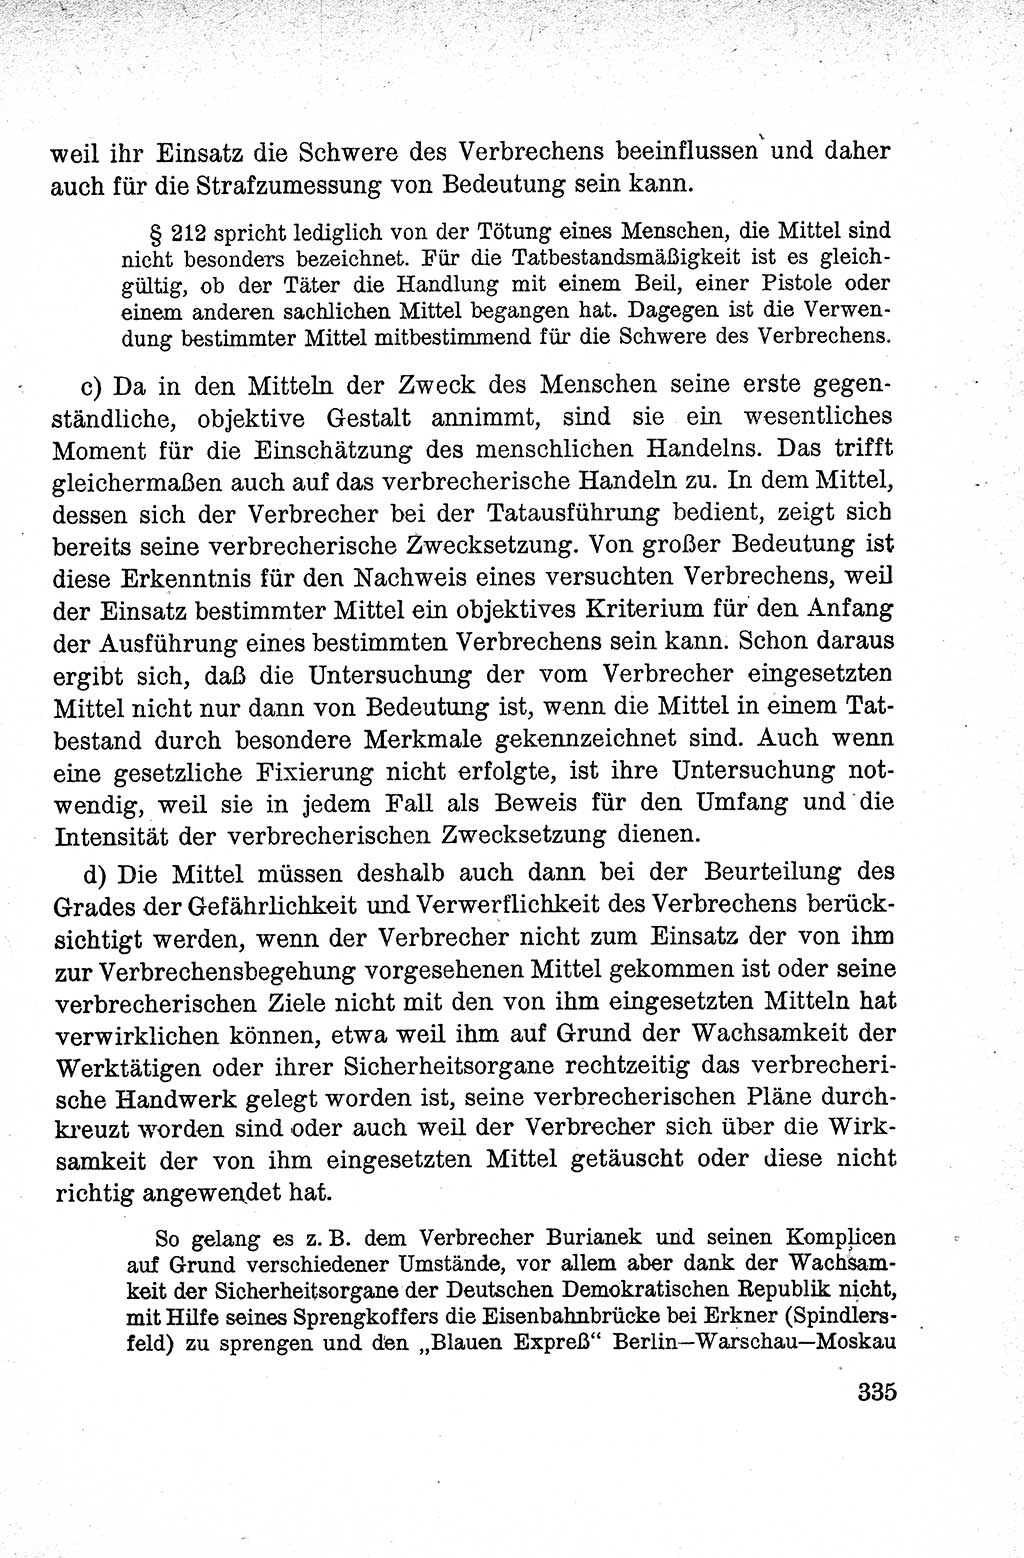 Lehrbuch des Strafrechts der Deutschen Demokratischen Republik (DDR), Allgemeiner Teil 1959, Seite 335 (Lb. Strafr. DDR AT 1959, S. 335)